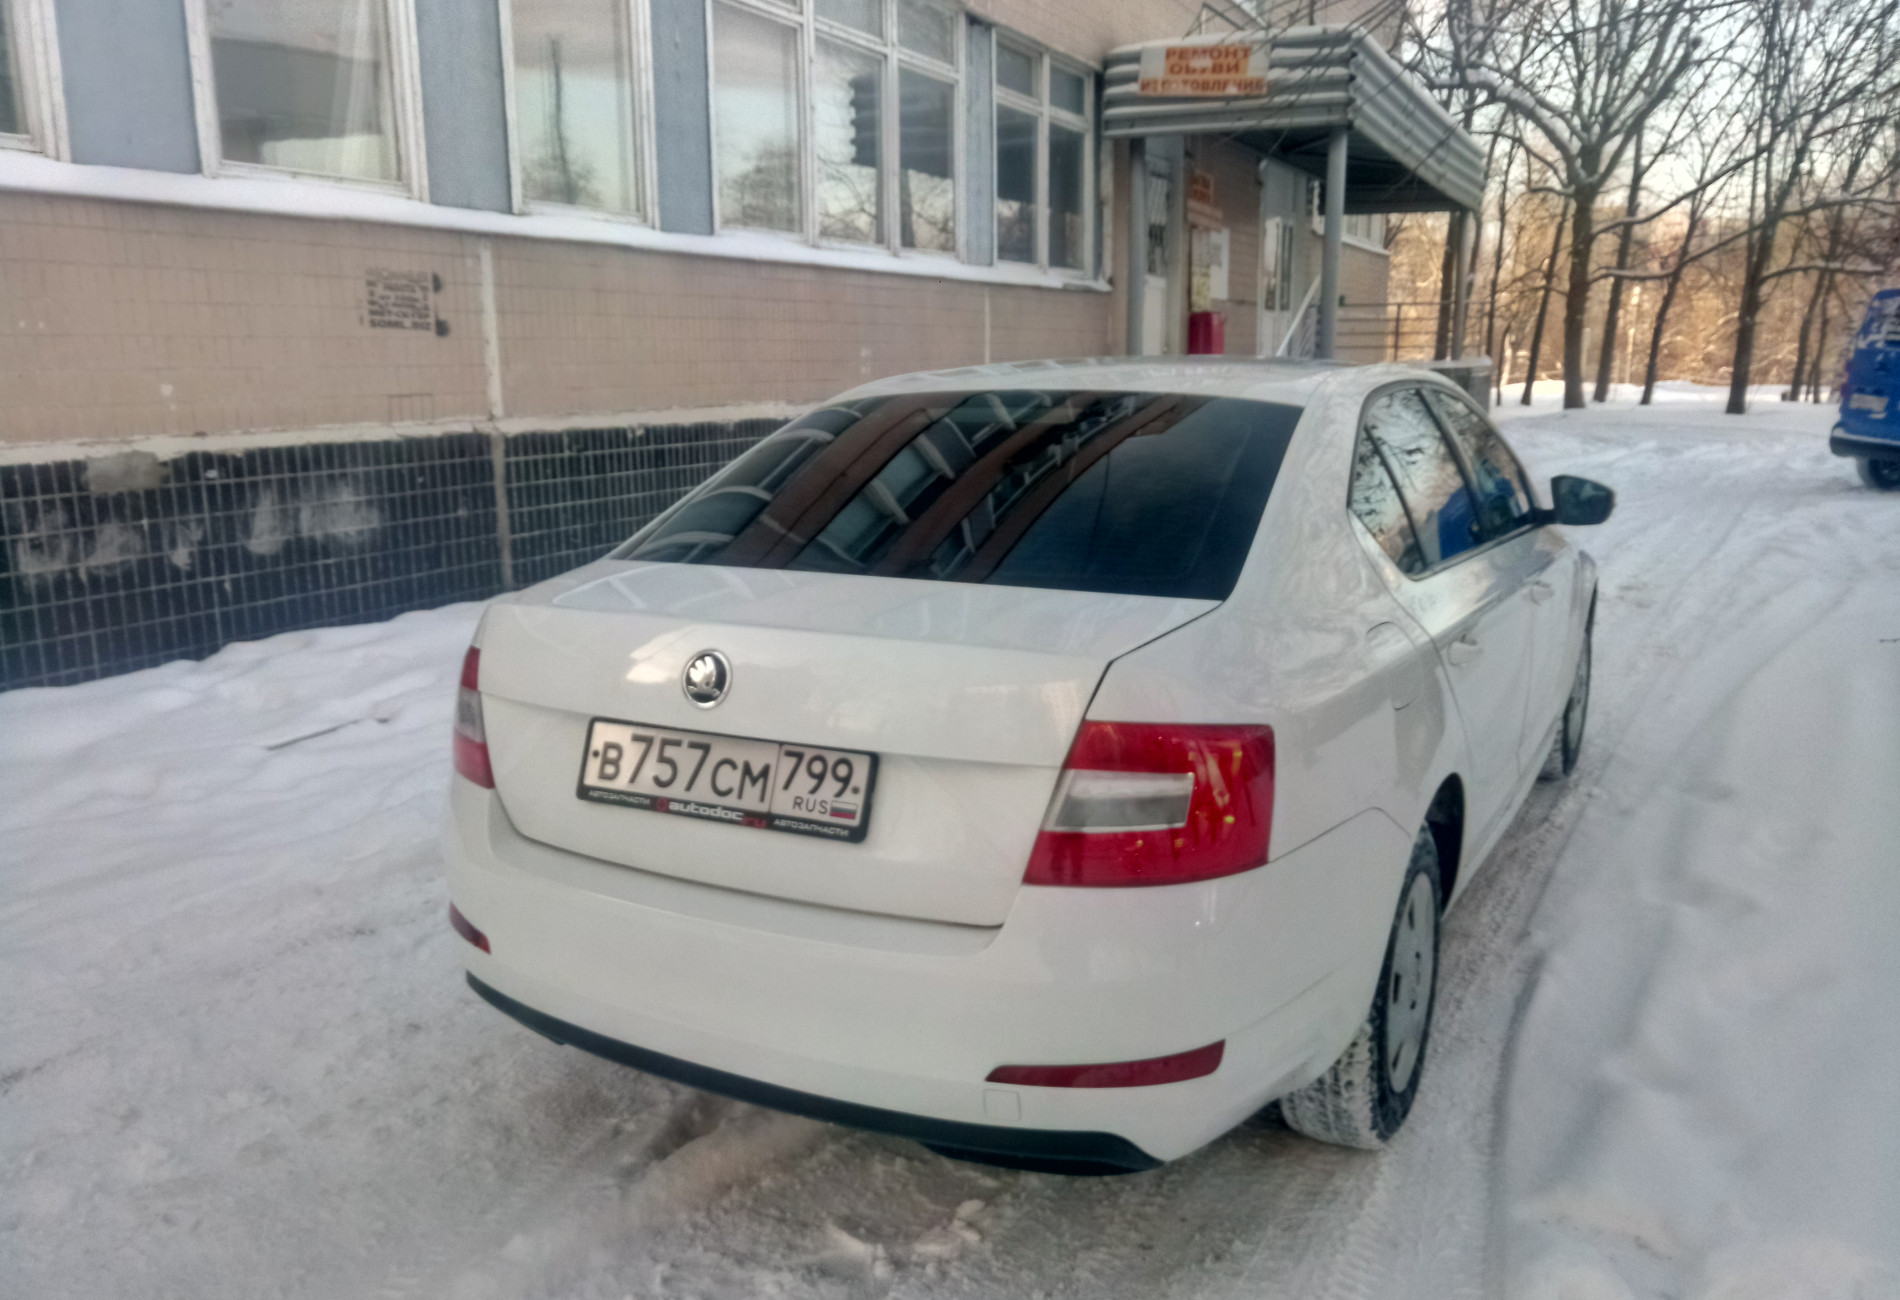 Аренда skoda octavia эконом класса 2015 года в городе Москва Ясенево от 1590 руб./сутки, передний привод, двигатель: бензин, объем 1.6 литров, ОСАГО (Впишу в полис), без водителя, недорого, вид 2 - RentRide